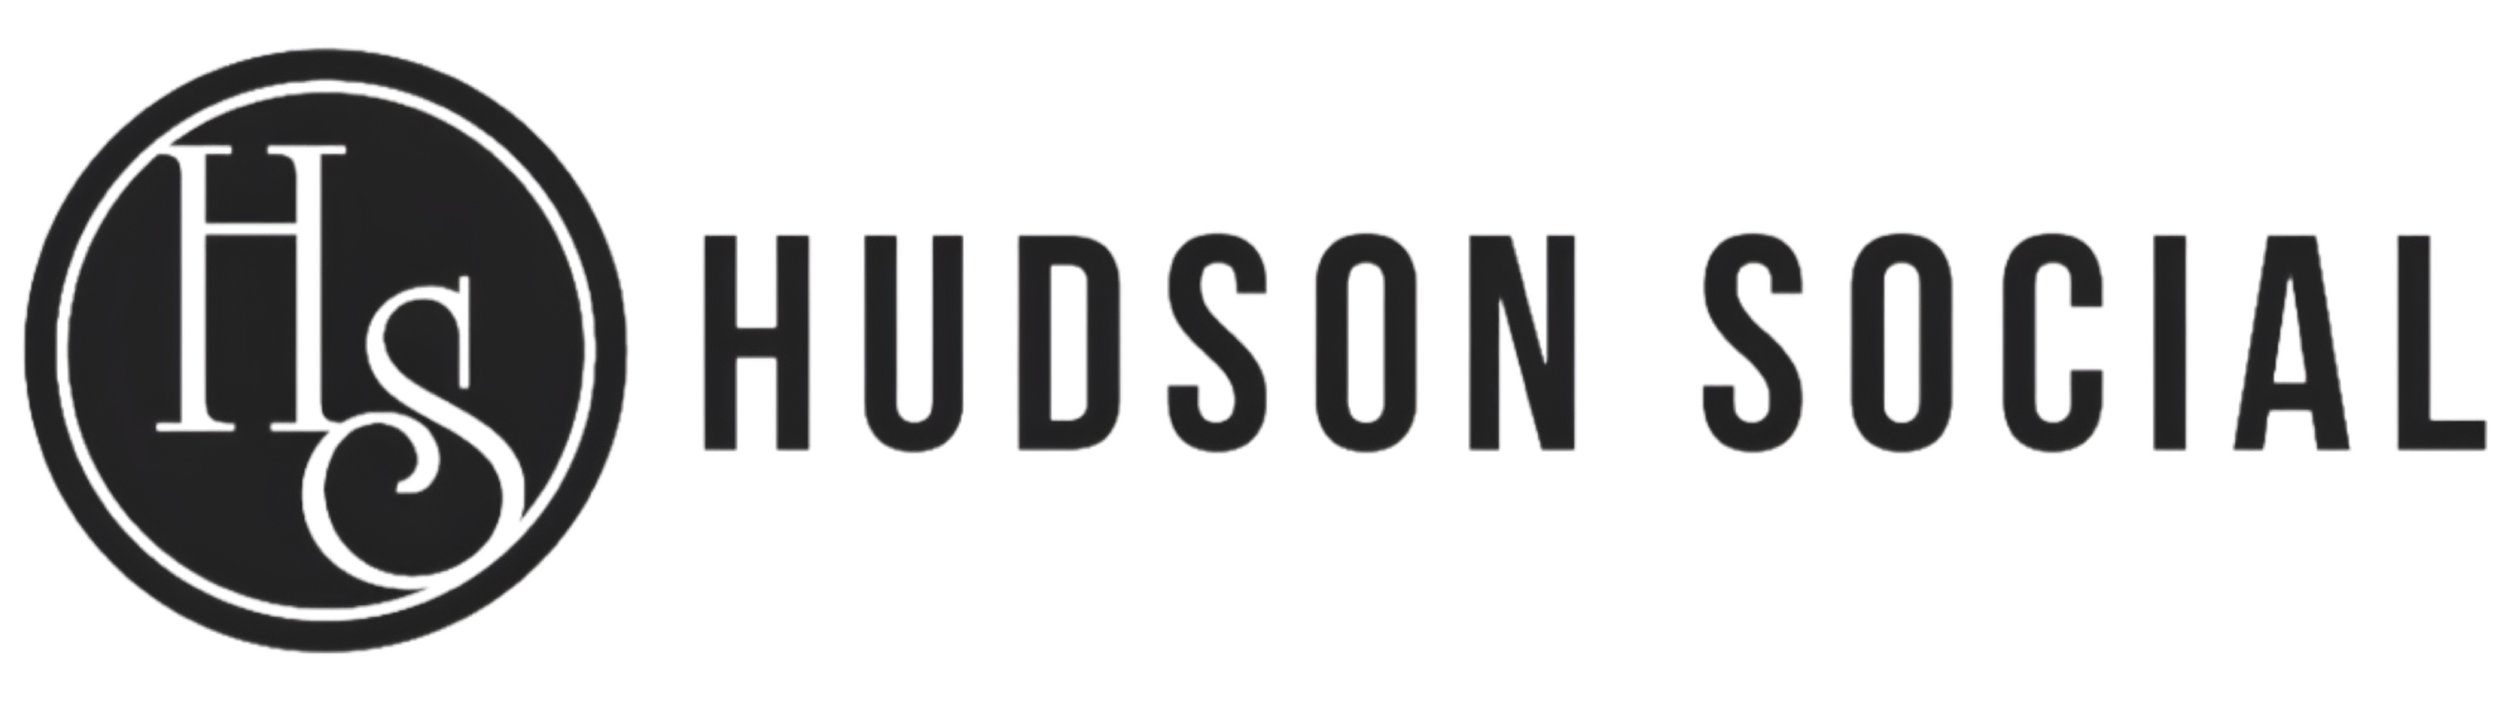 Hudson Social